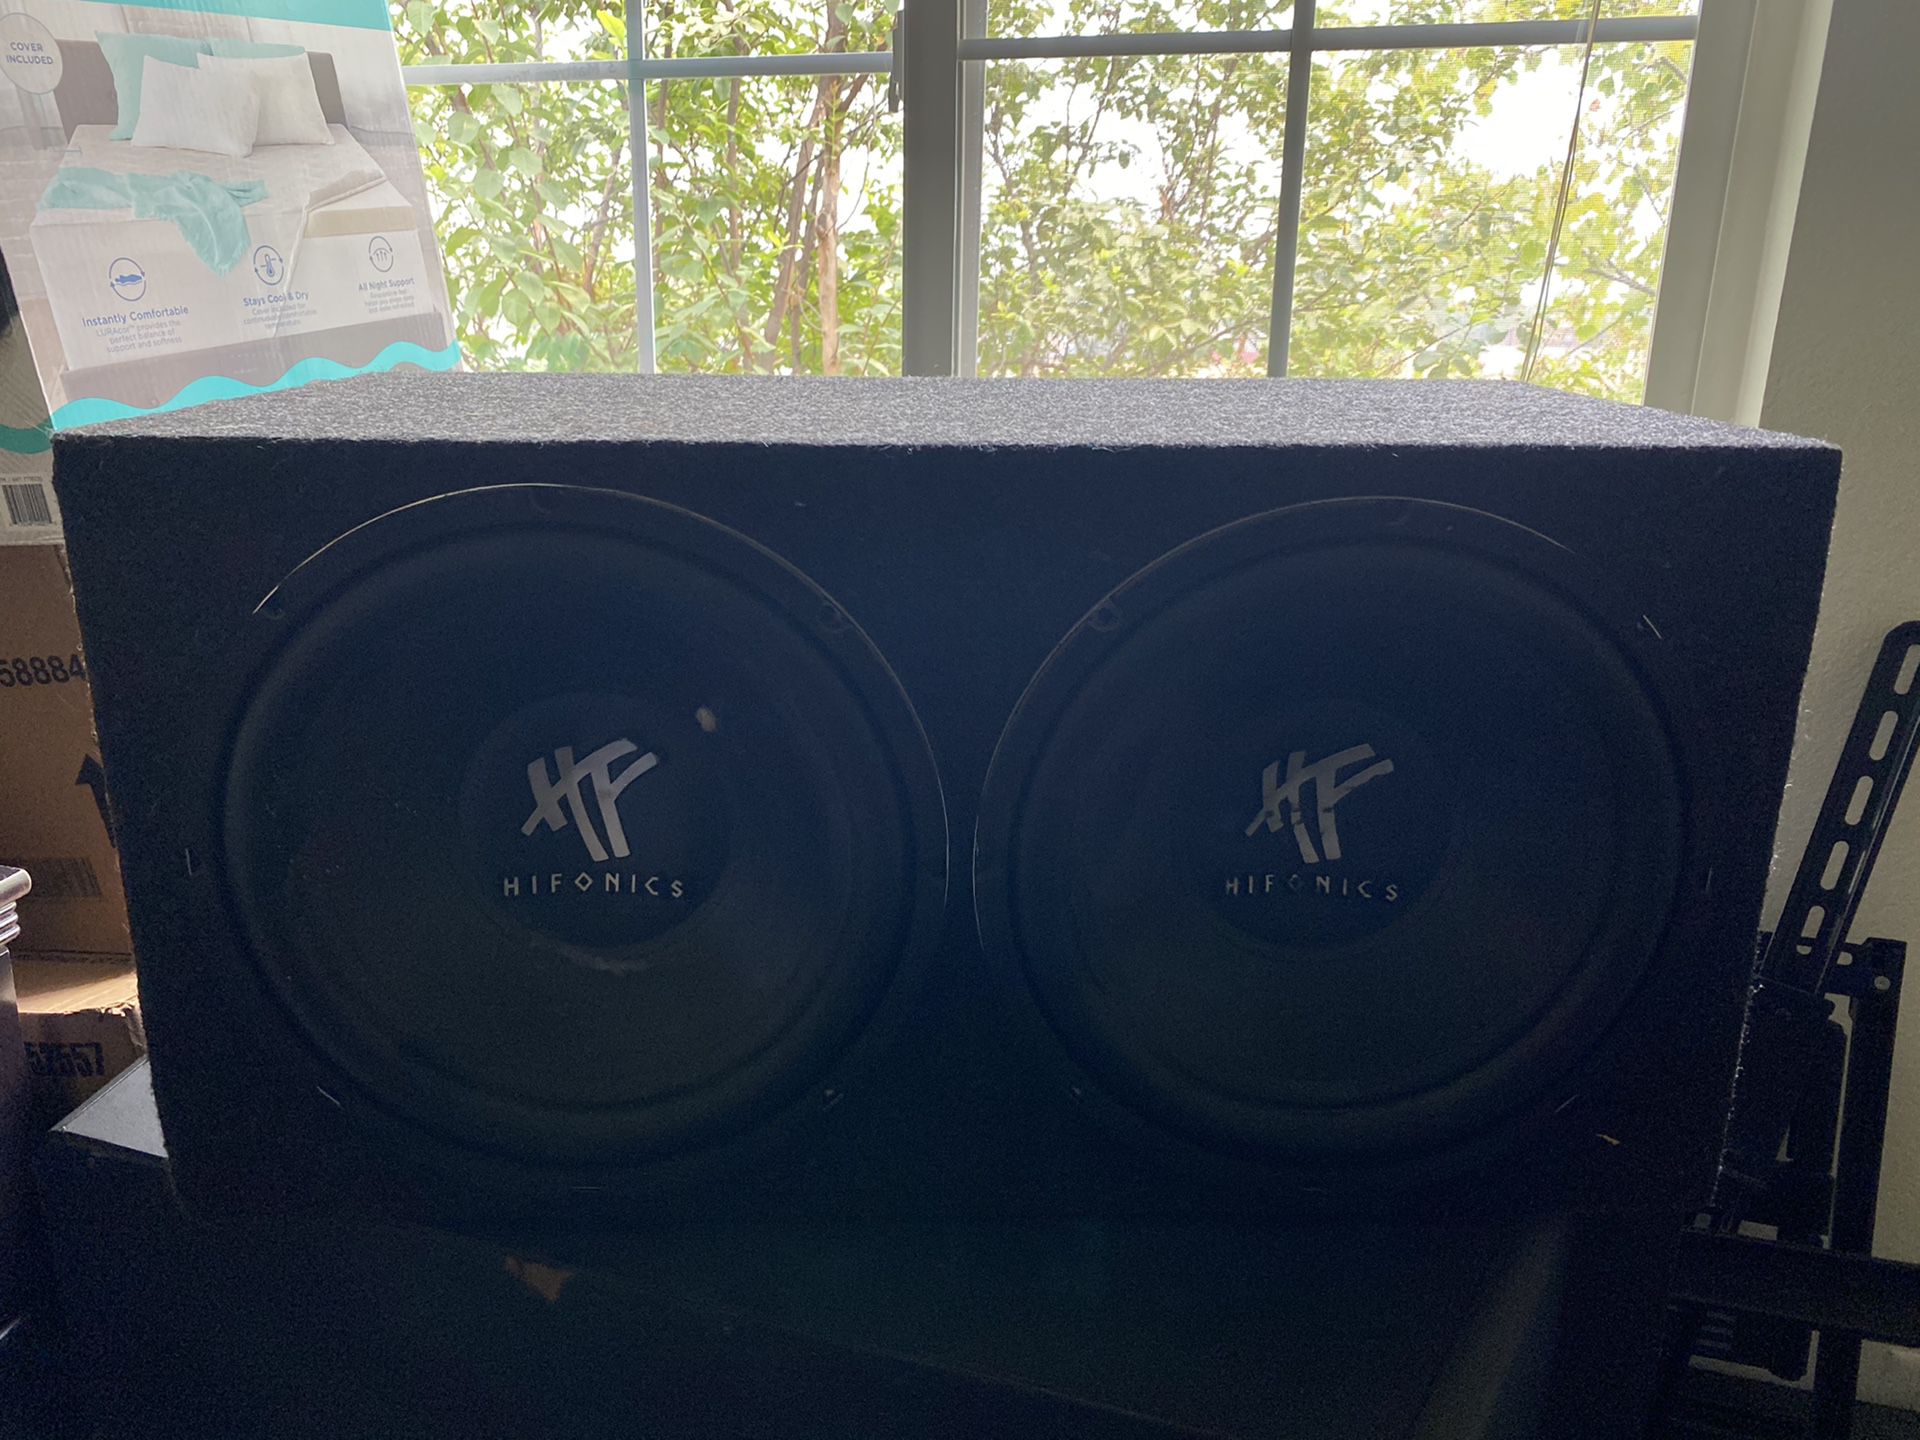 12” speakers hifonics